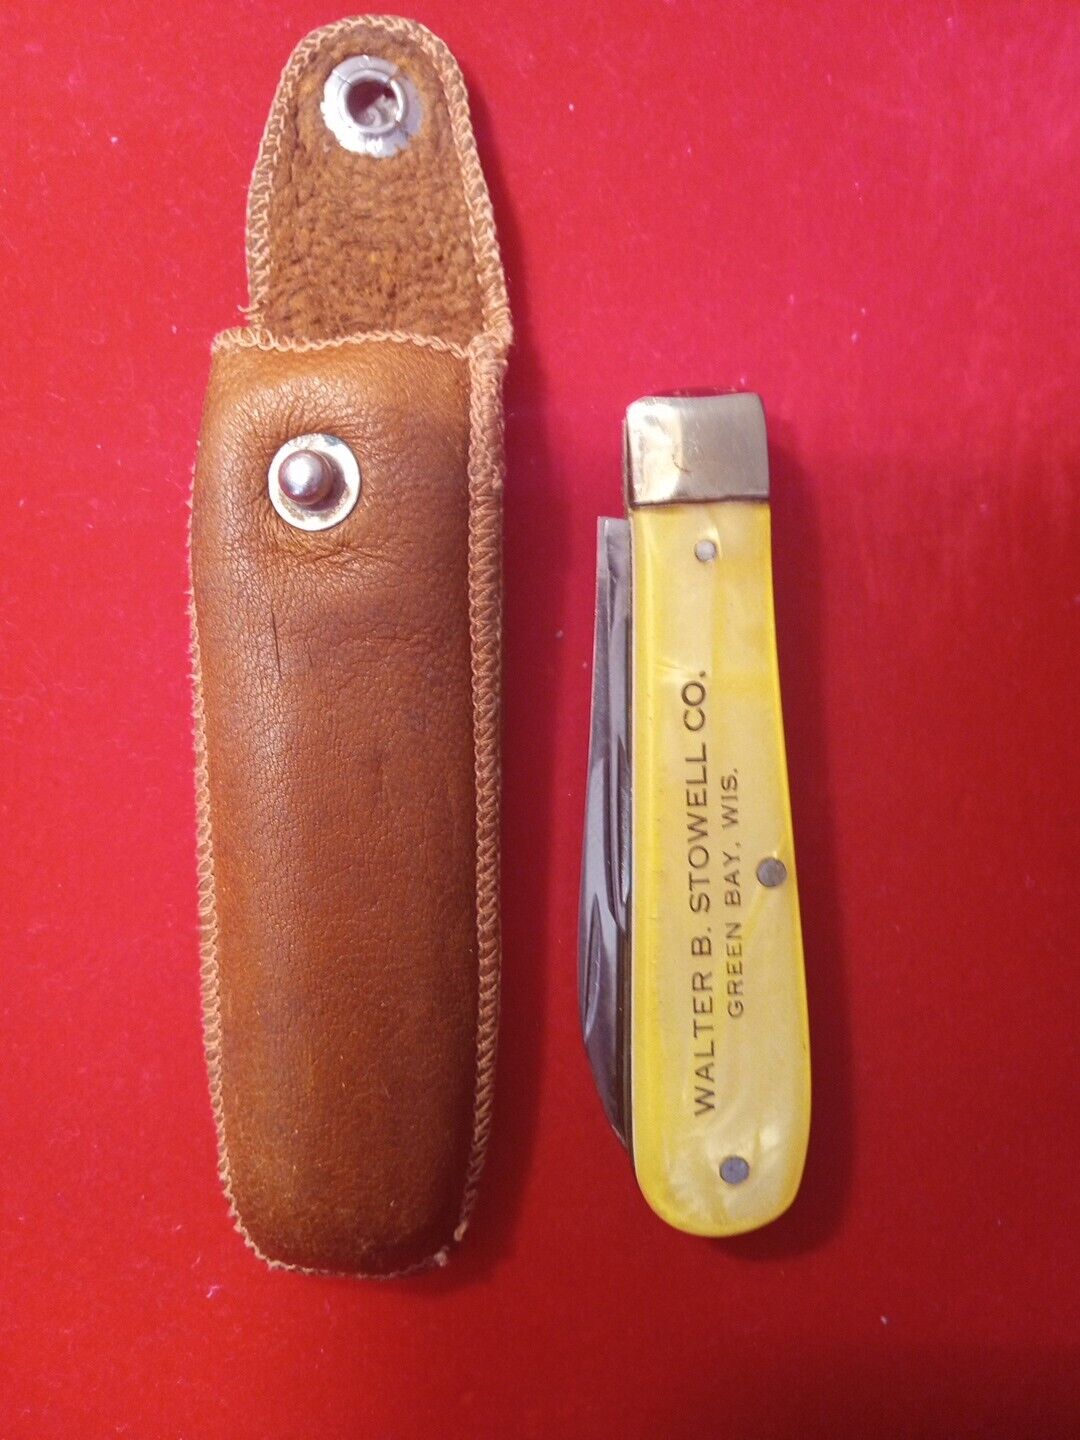 Vintage Cracked Ice Pocket Knife Unbranded USA Made